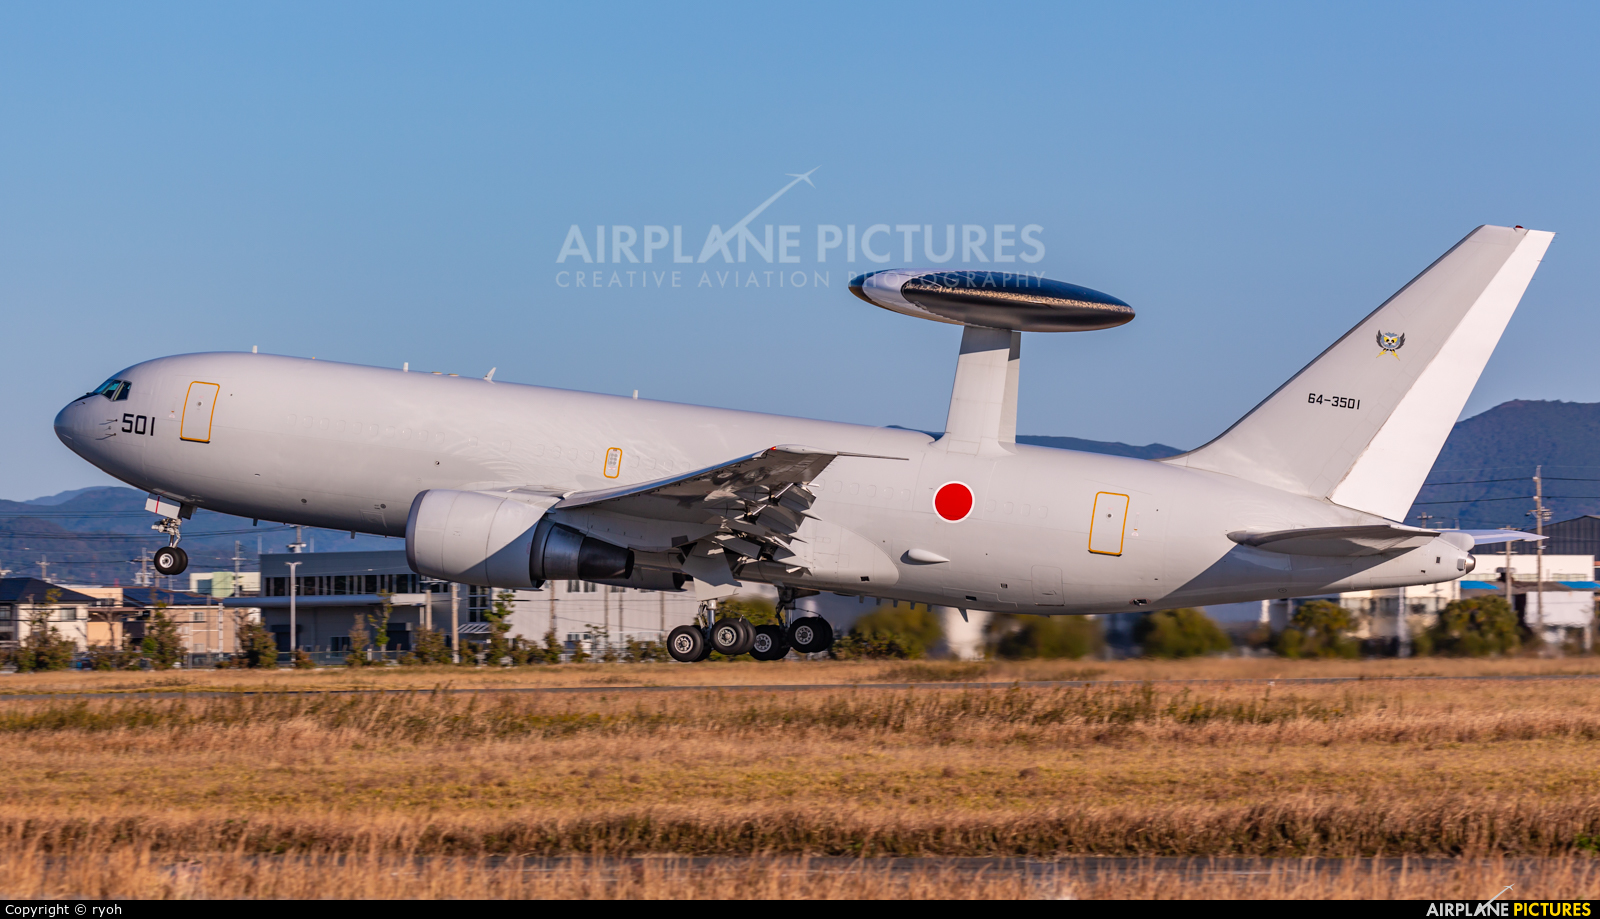 Japan - ASDF: Blue Impulse 64-3501 aircraft at Hamamatsu AB